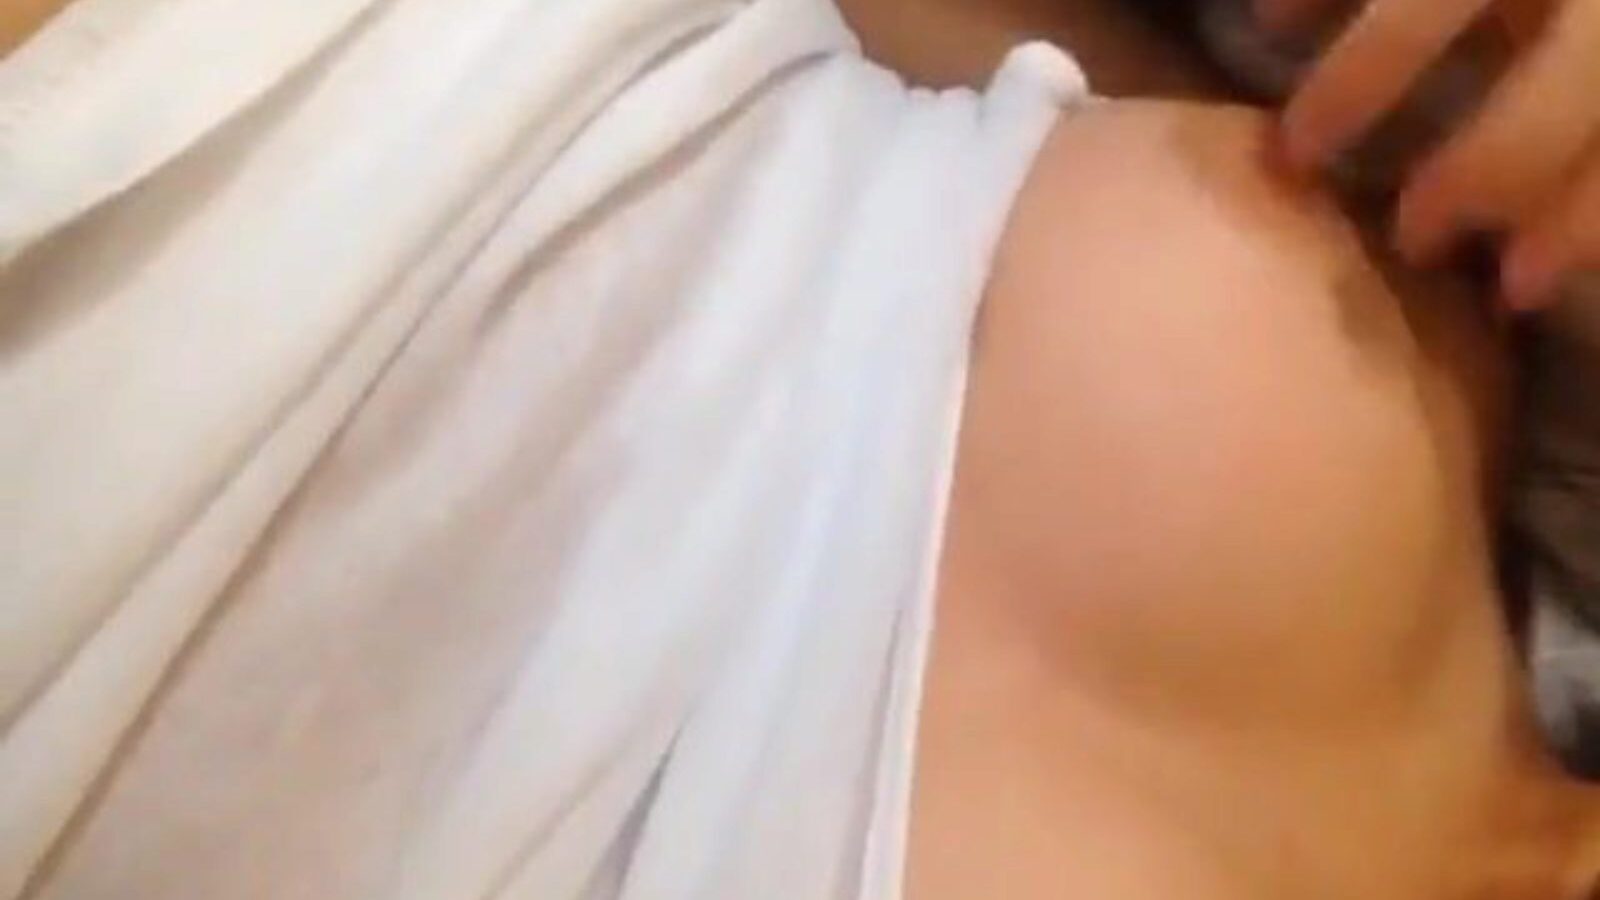 прелепа азијска тинејџерка зафркнута уска мокра сочна маца на камери